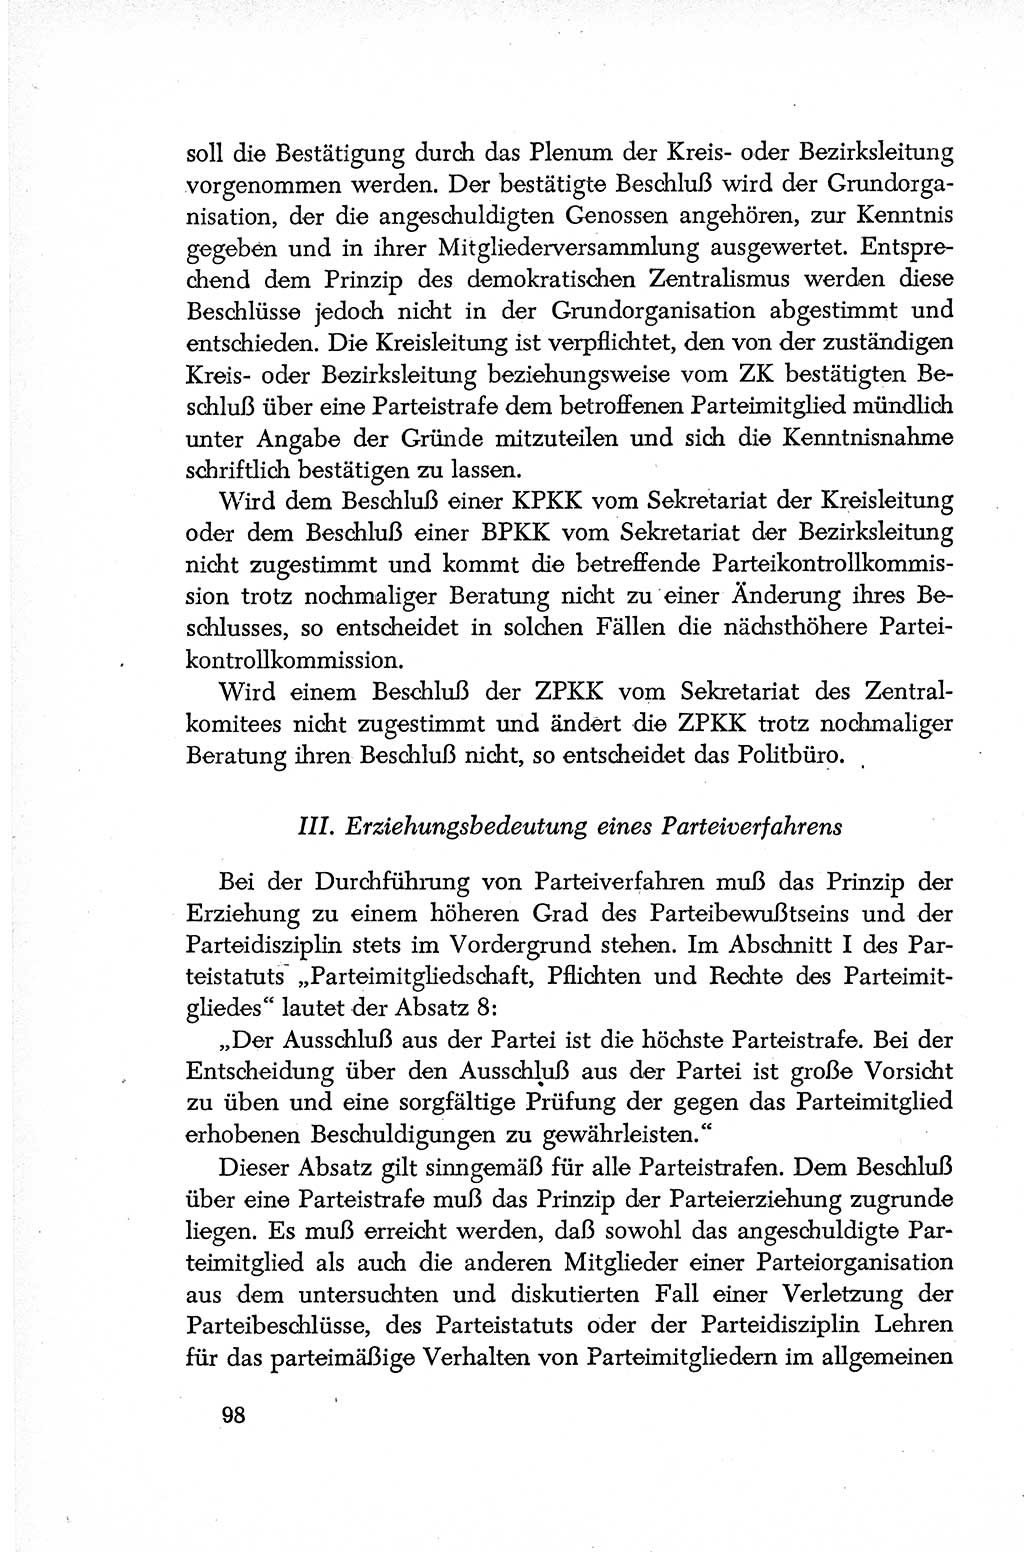 Dokumente der Sozialistischen Einheitspartei Deutschlands (SED) [Deutsche Demokratische Republik (DDR)] 1952-1953, Seite 98 (Dok. SED DDR 1952-1953, S. 98)